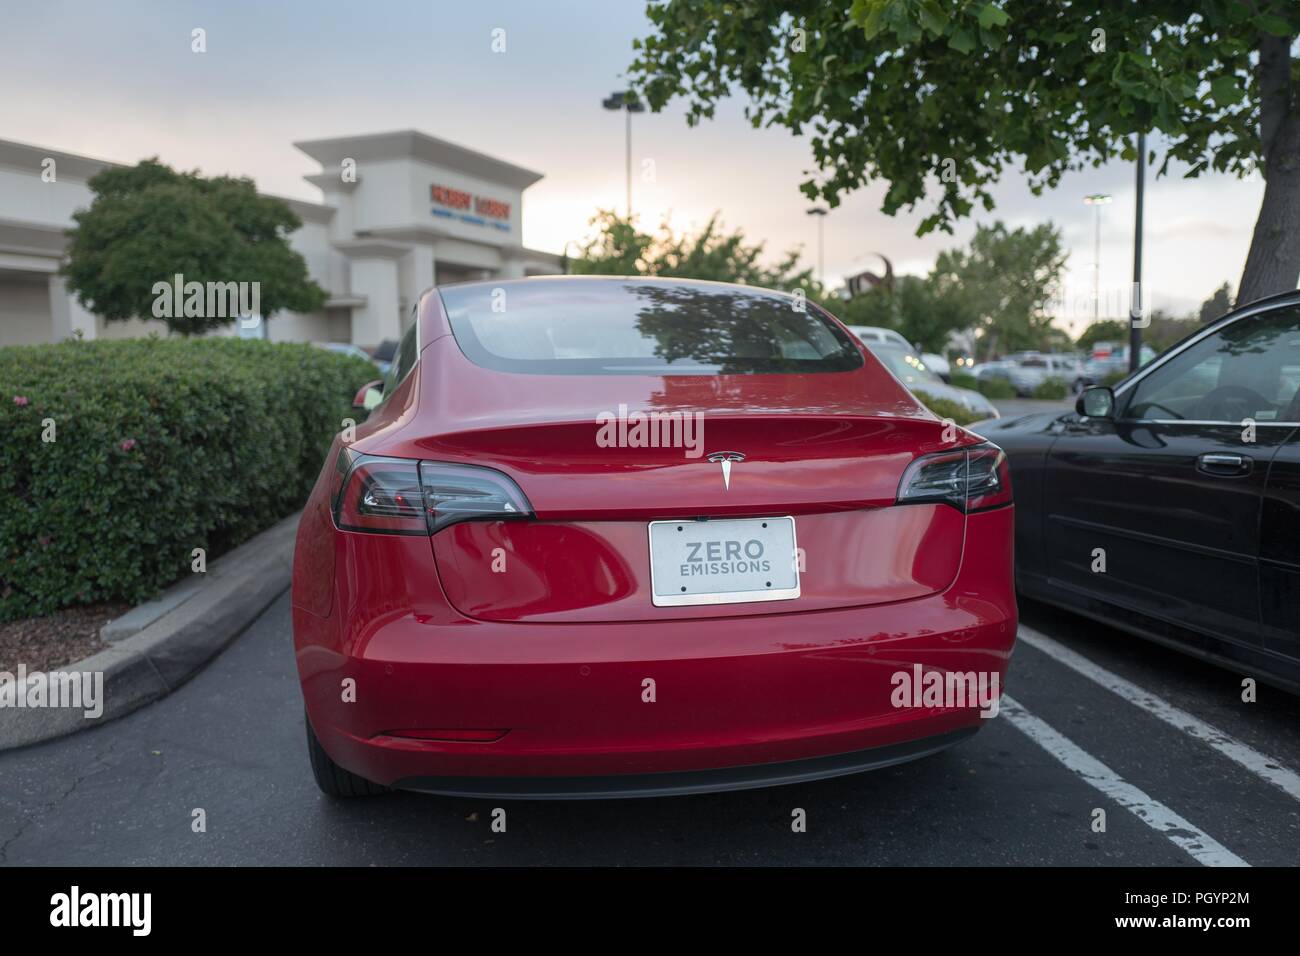 Rückansicht eines roten Tesla Modell 3 Elektroauto von Tesla Motors mit einem Nummernschild Null Emissionen Lesung im Rahmen einer dramatischen Himmel in der San Francisco Bay Area, Dublin, Kalifornien, 21. Mai 2018. () Stockfoto